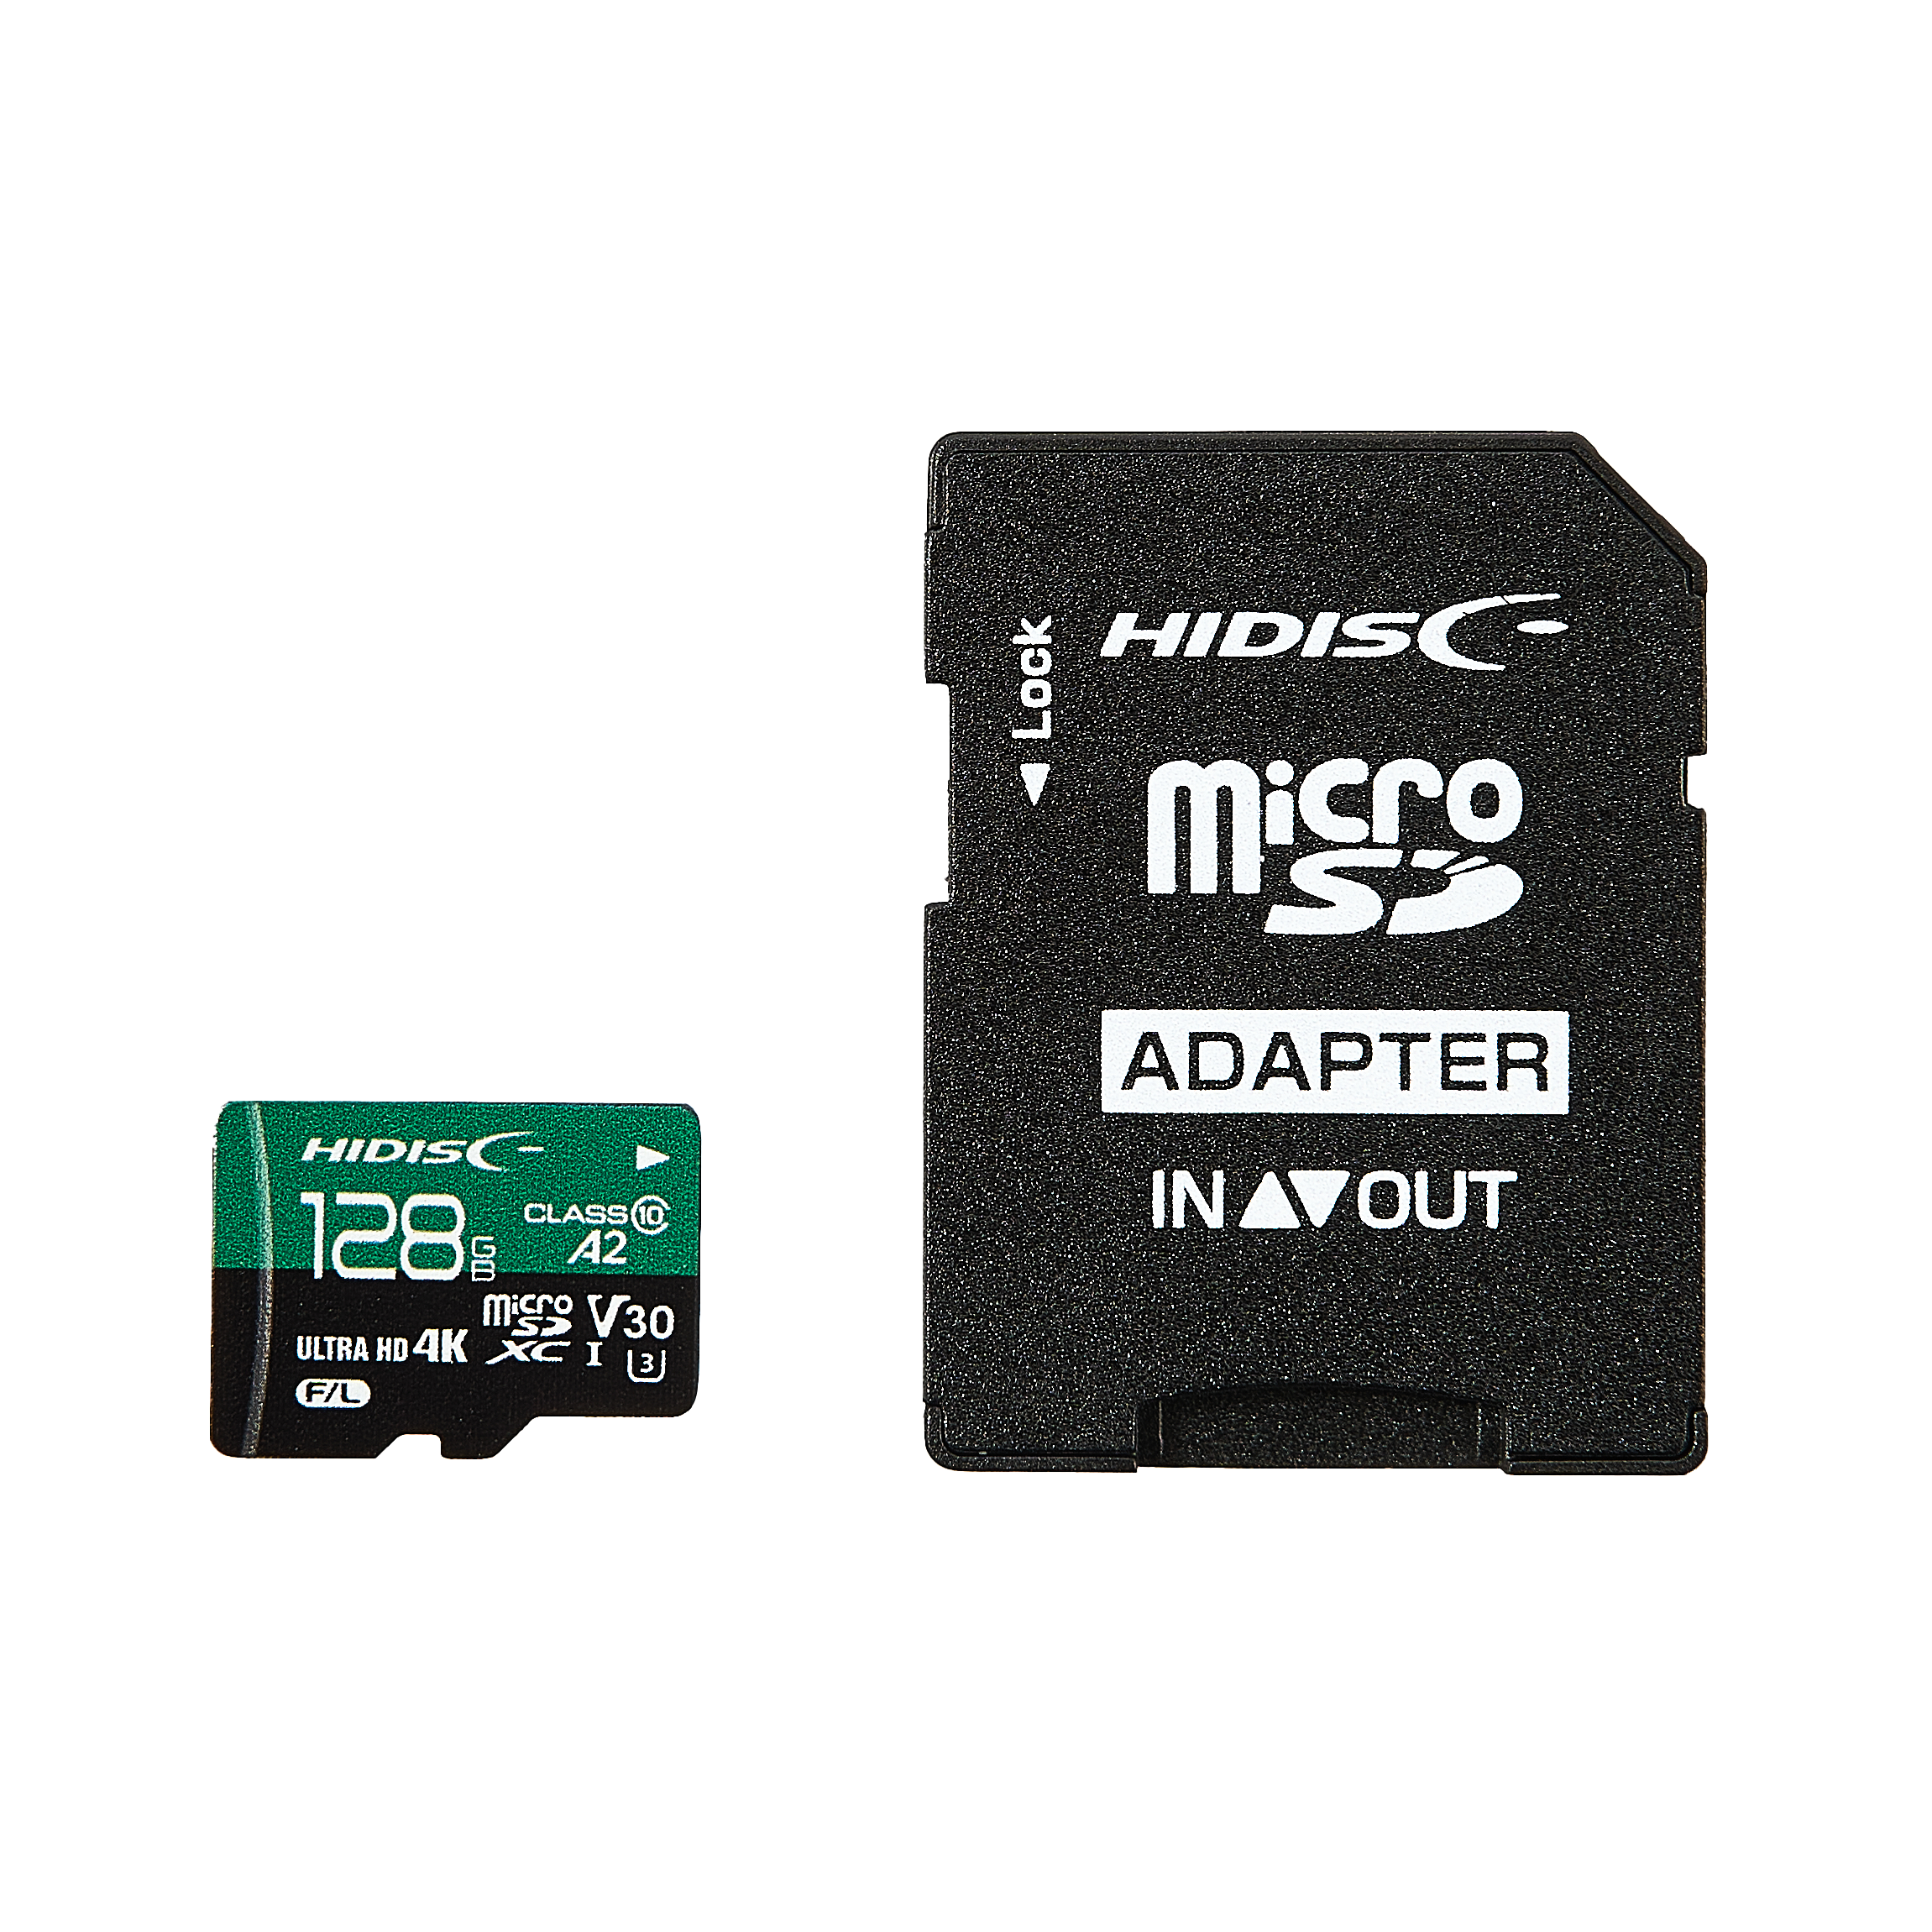 MicroSDカード 32GB UHS-I V30 超高速最大90MB sec 3D MLC NAND採用 ASチップ microSDXC 300x SDカード変換アダプタ USBカードリーダー付き 6ヶ月保証